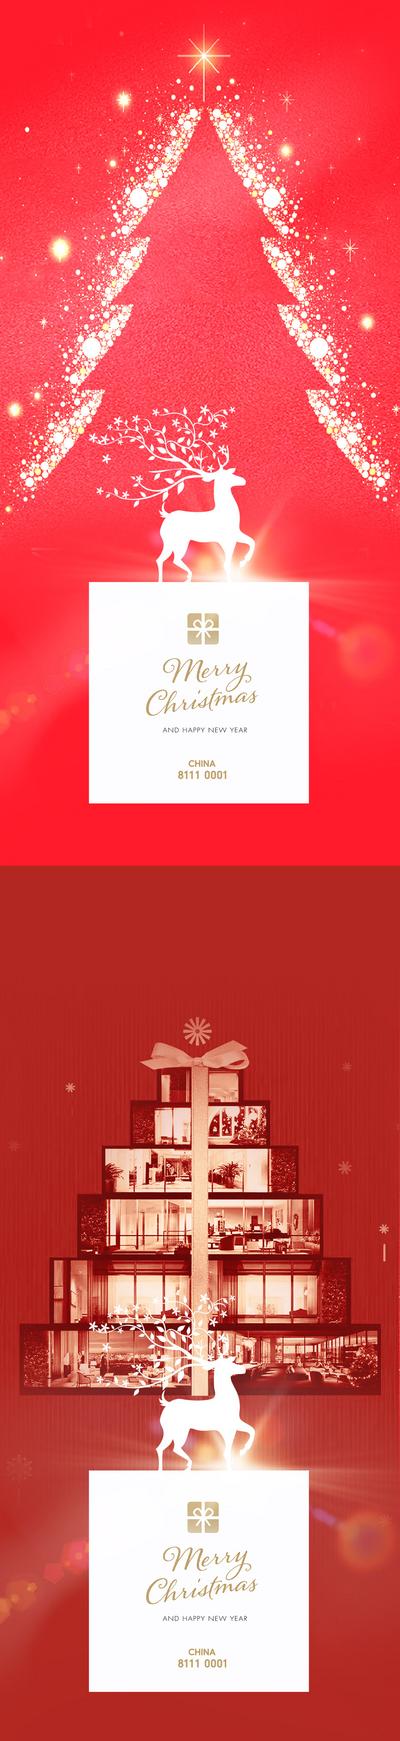 南门网 海报  圣诞节  公历节日    圣诞树   礼物   鹿  简约  创意